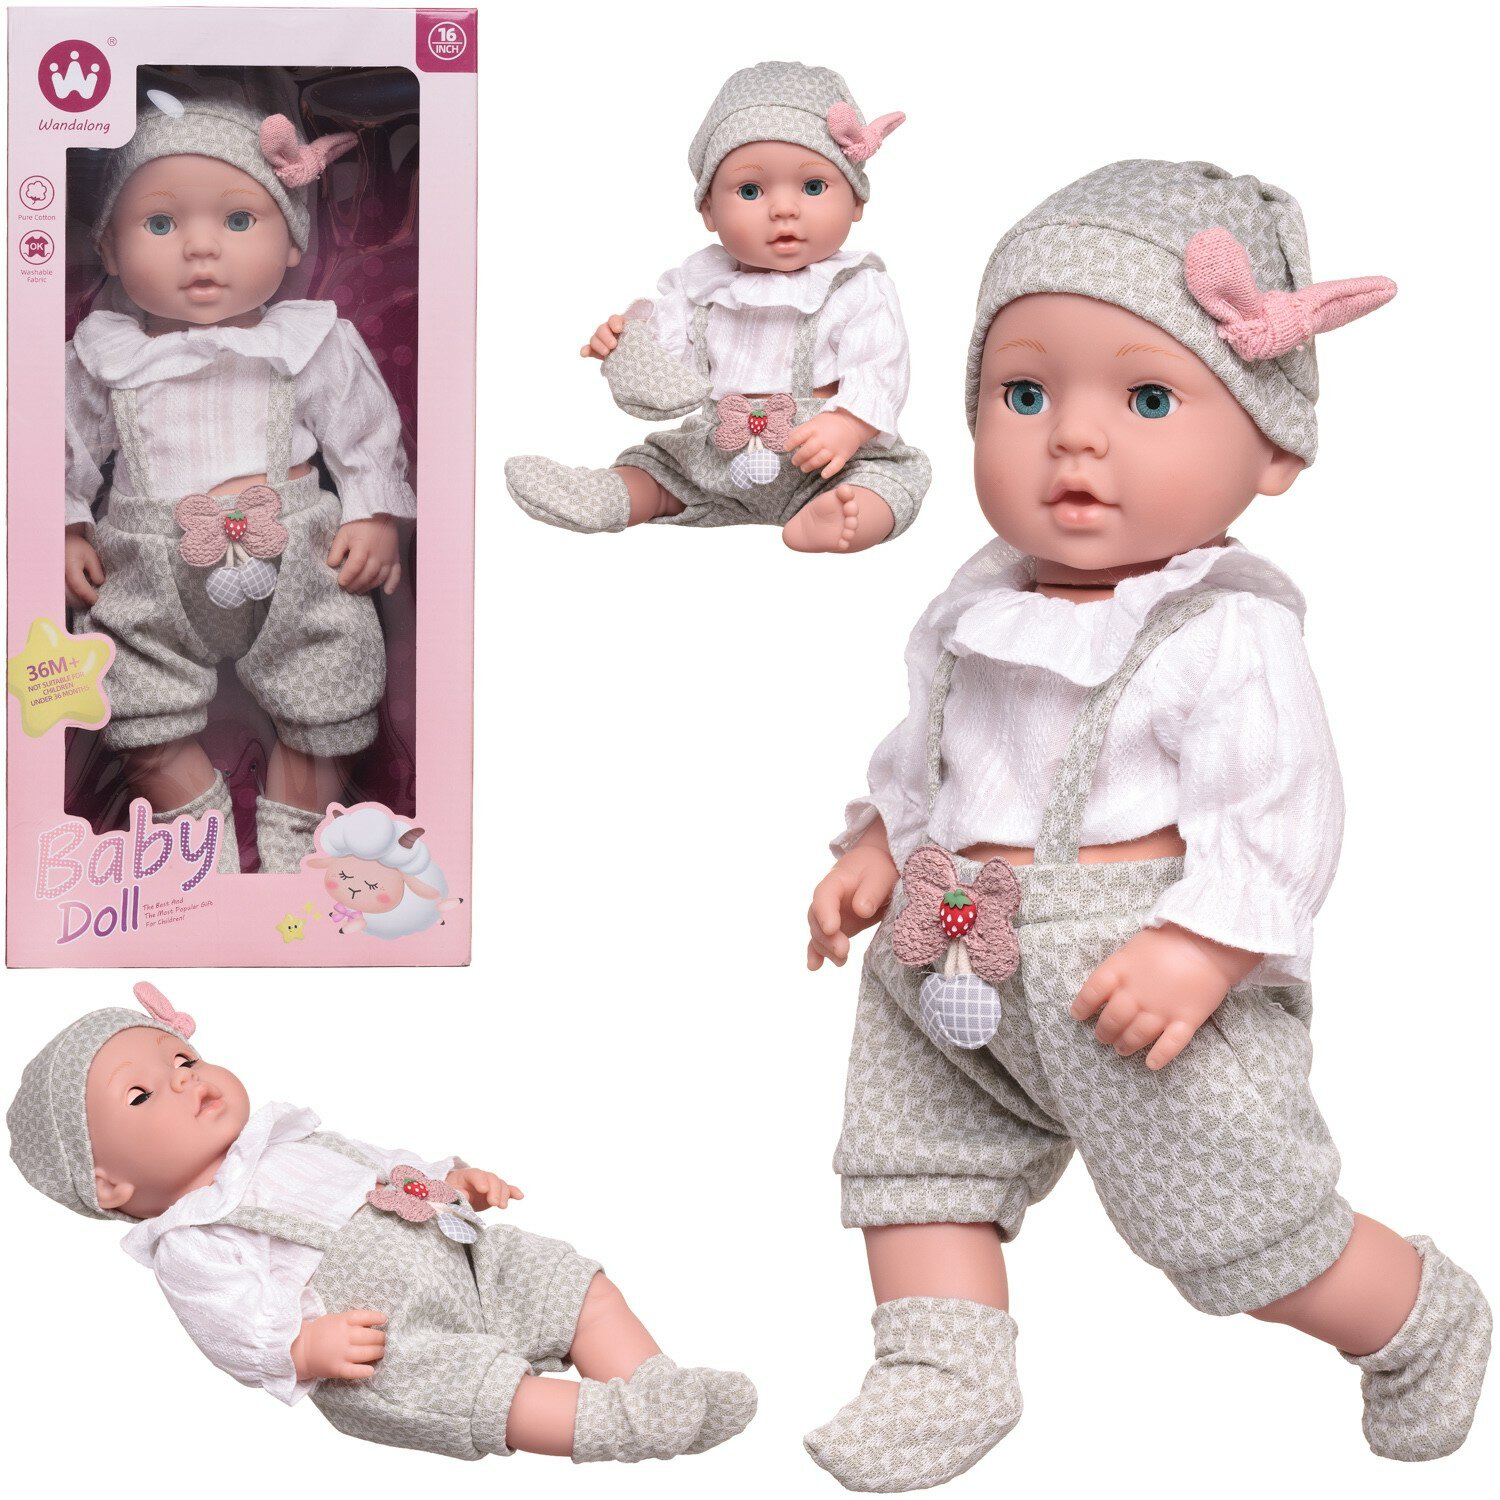 Пупс-кукла Junfa "Baby Doll", 40 см, 16 дюймов, в бело-серой одежде, в коробке